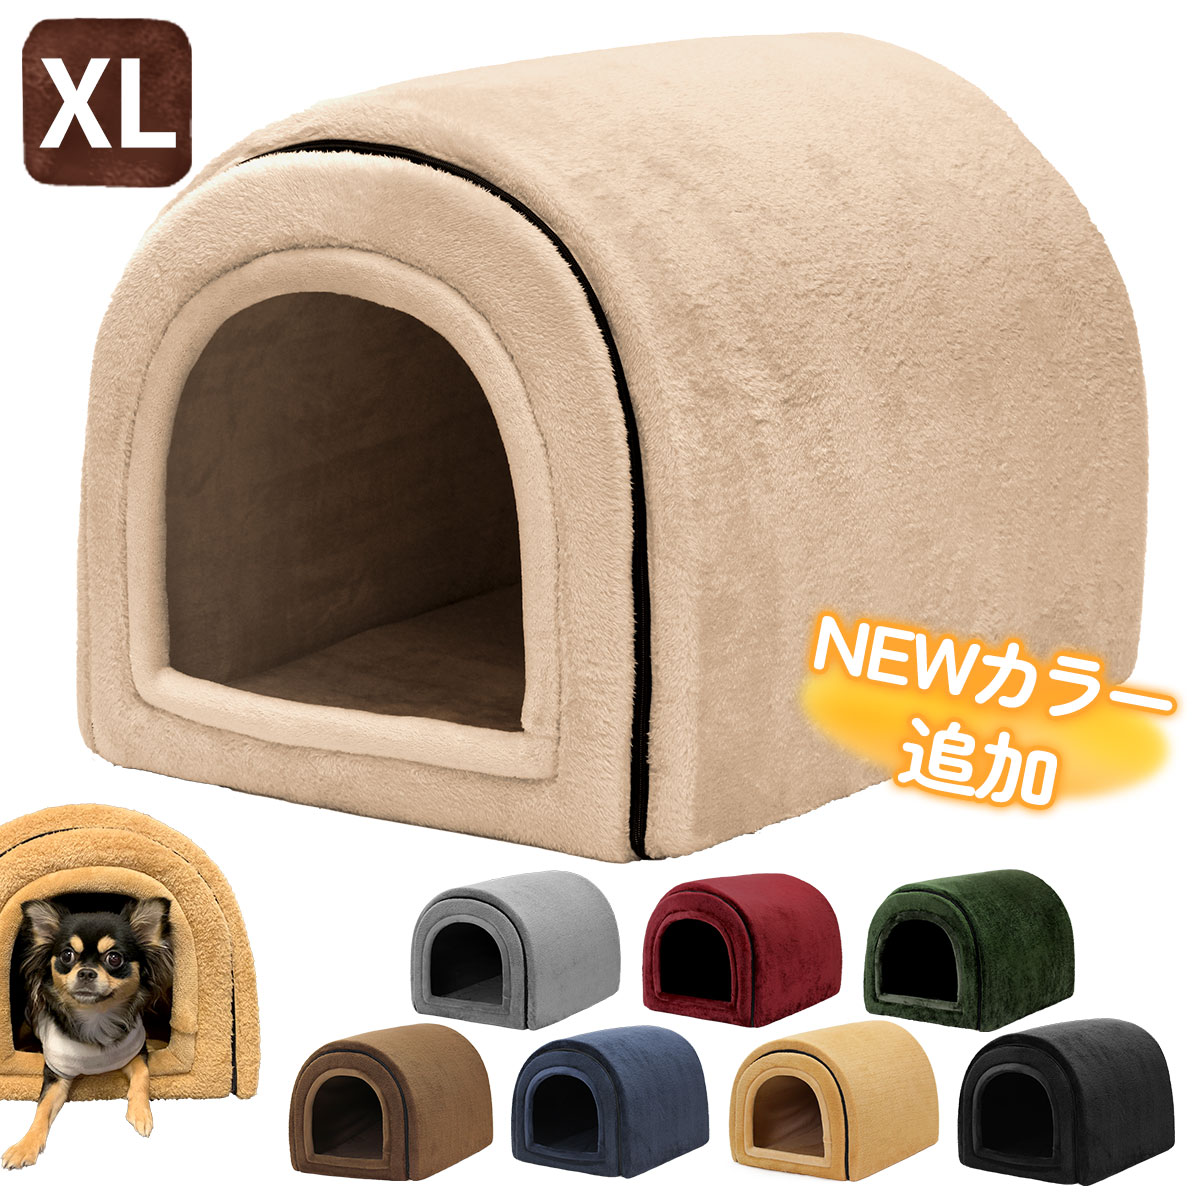 スーパーPayPayクーポン発行中 猫ベッド 冬 ねこ ハウス 暖かい 猫のベッド 洗える 子犬 小型犬 ベッド ドーム型 キャット ベッド もこもこ